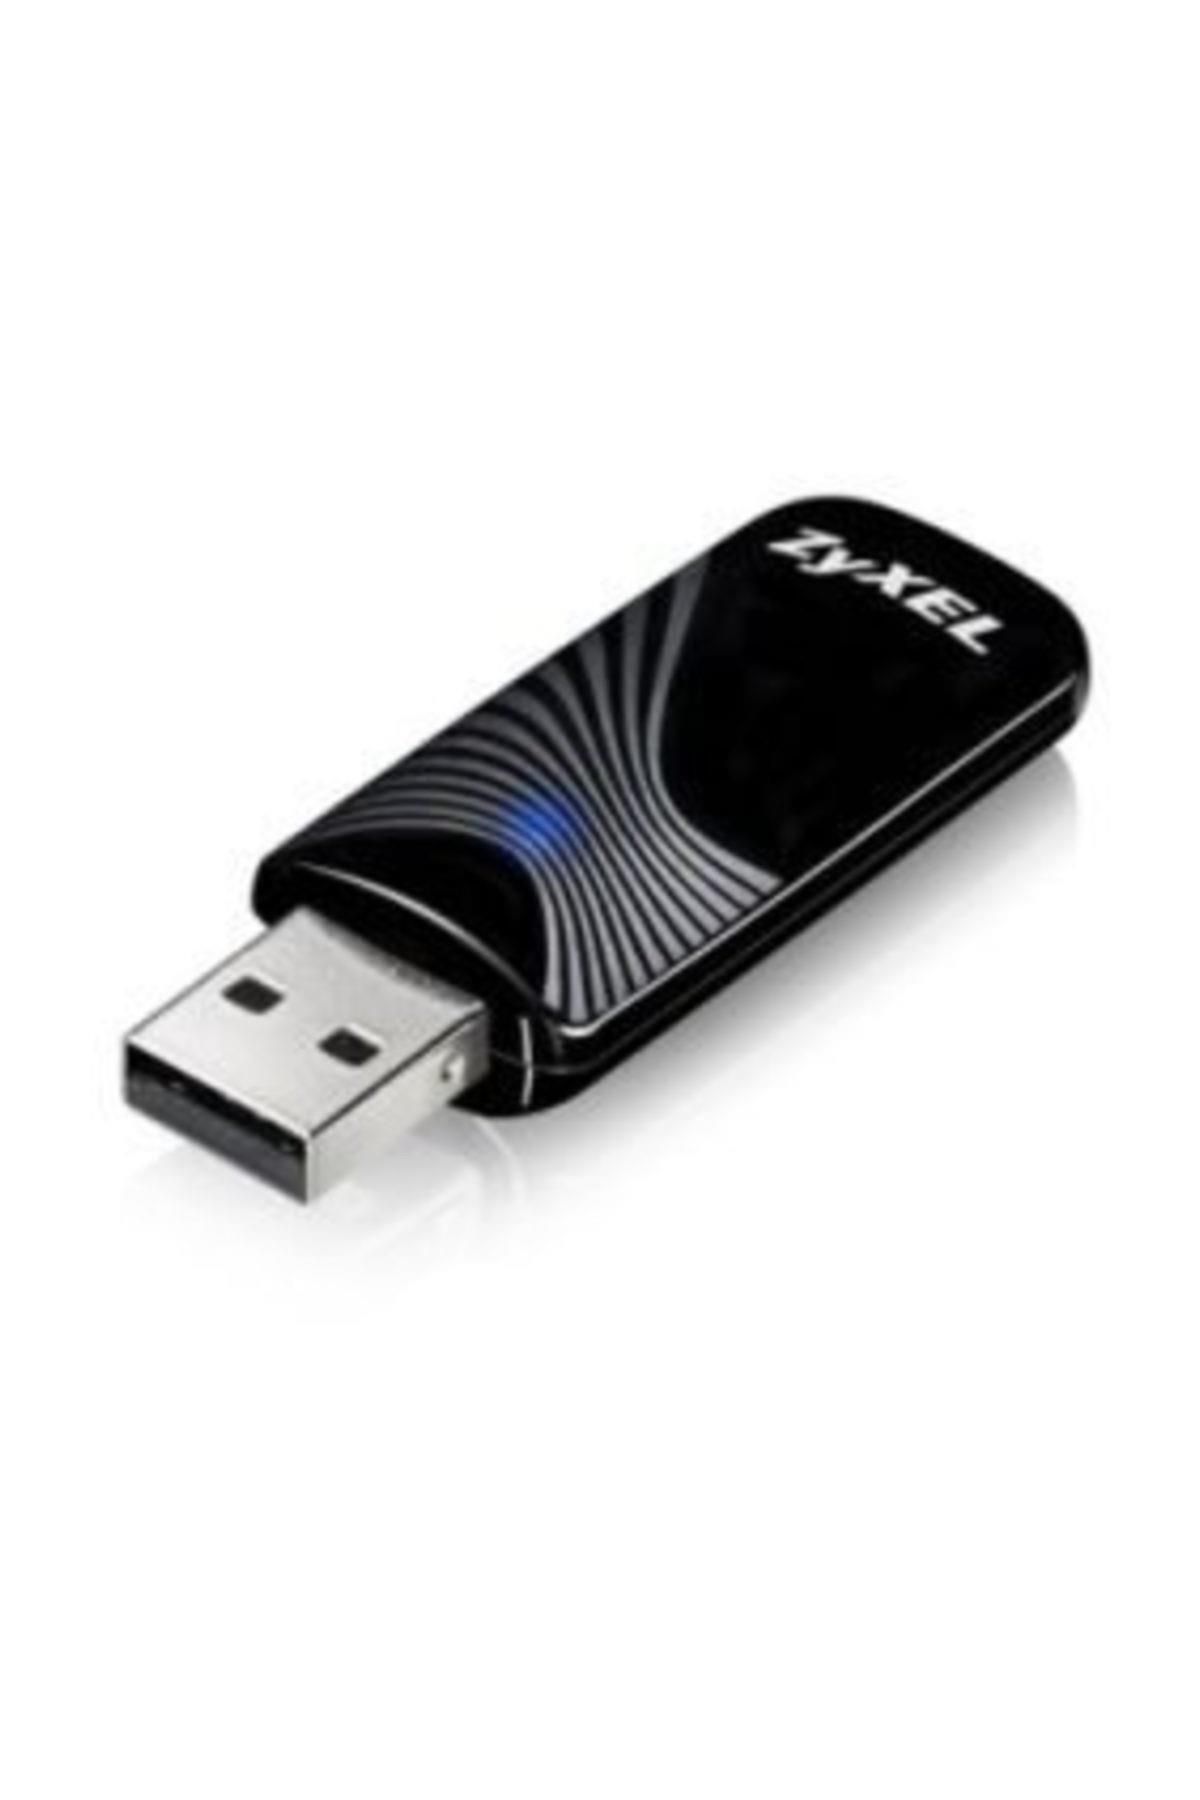 Zyxel NWD6505 AC600 2.4GHz&5GHz Kablosuz Dual Band AC 600Mbps USB Adaptör